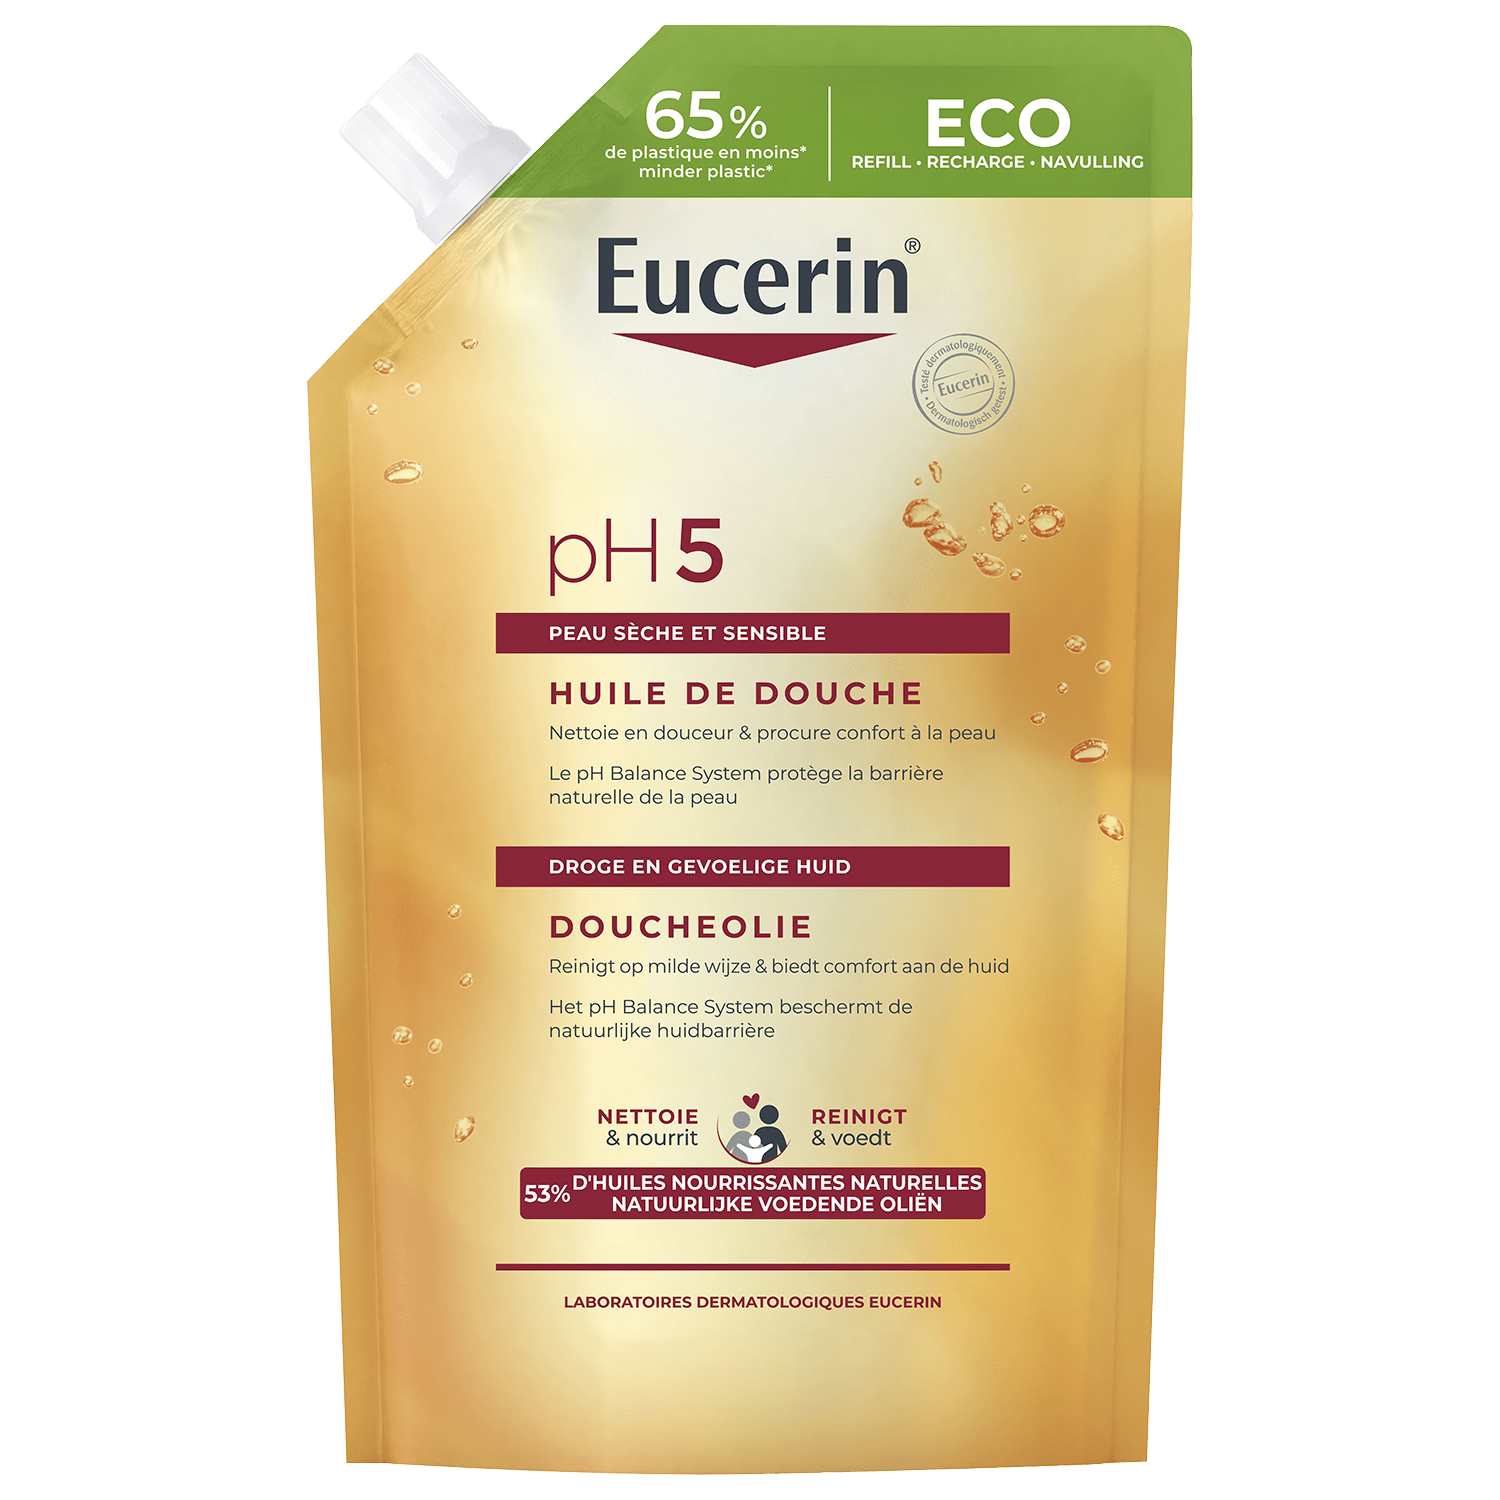 Emballage Eco recharge Eucerin entouré d